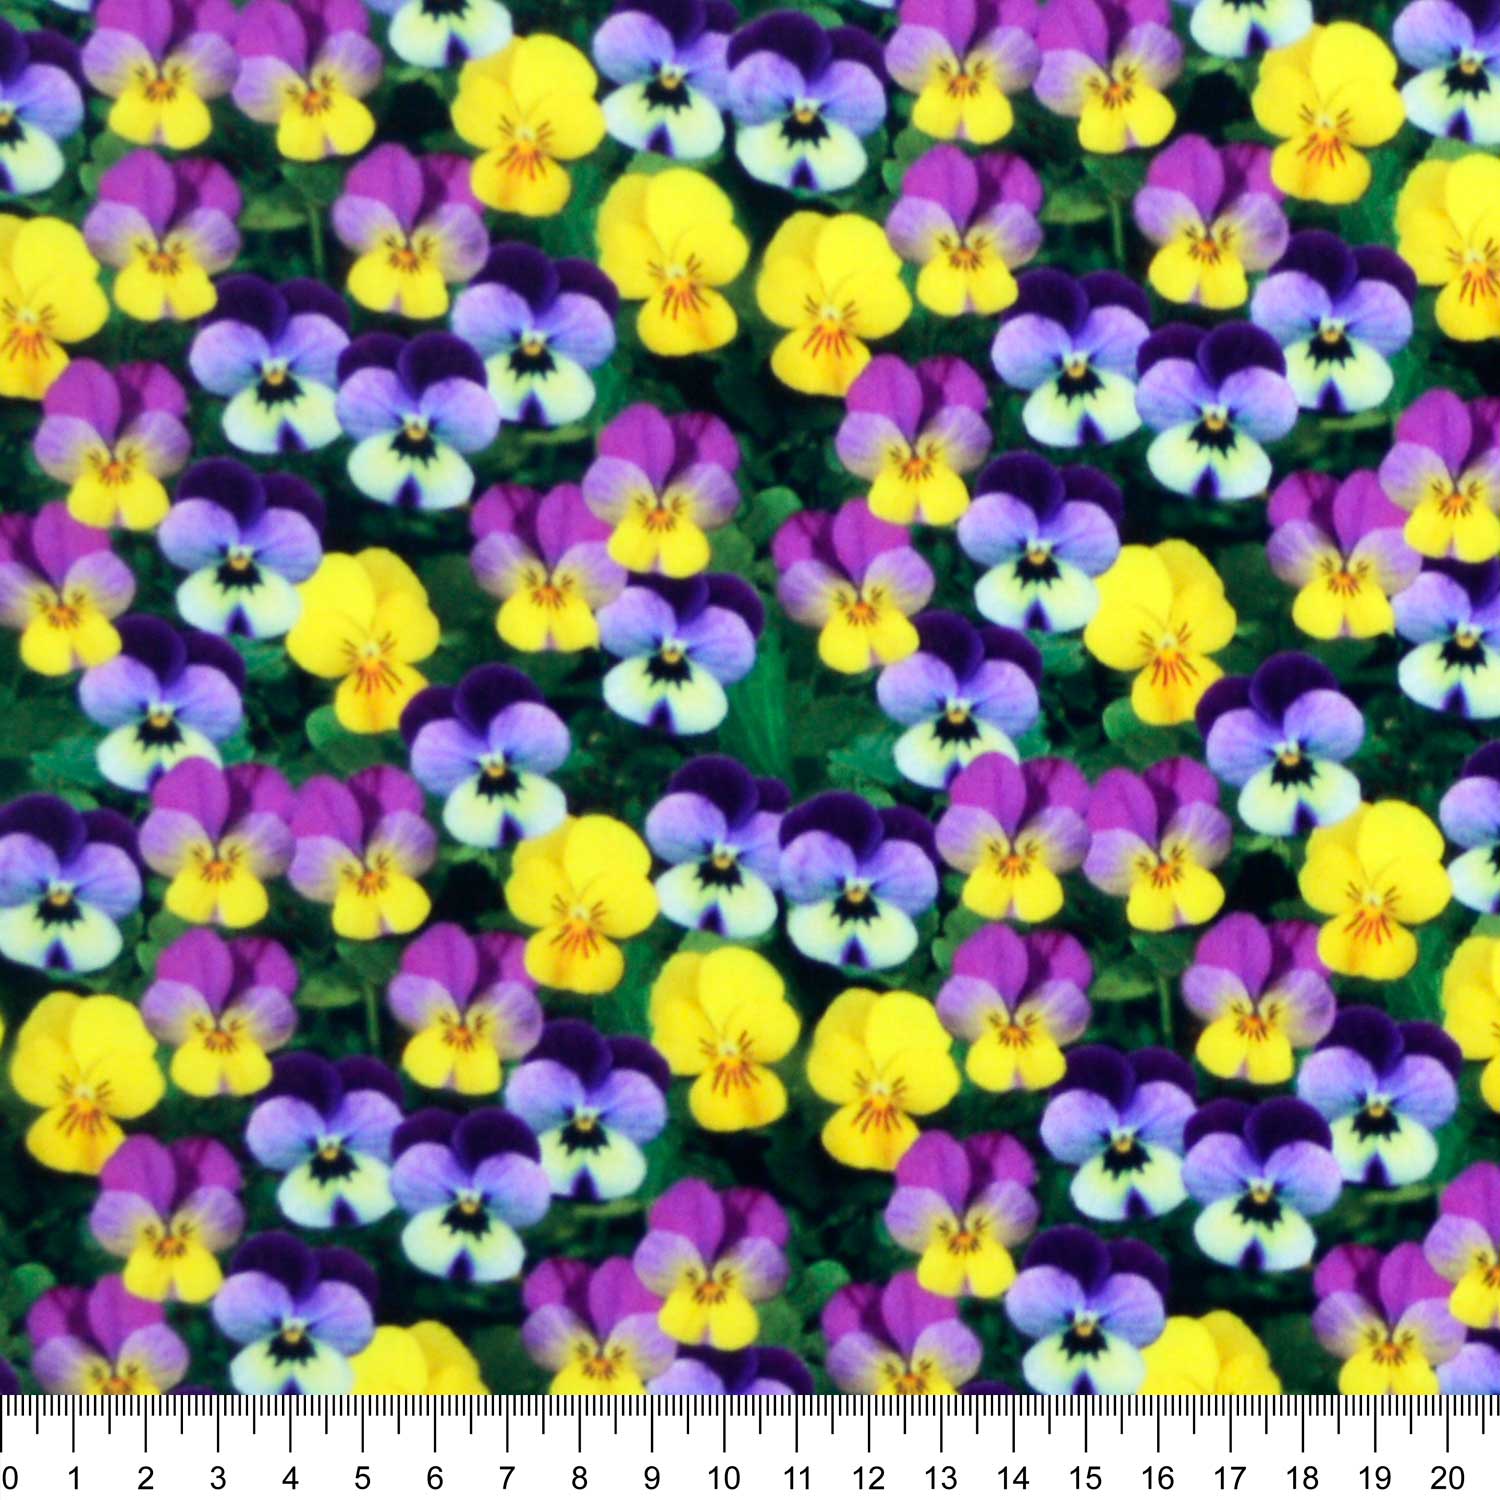 tecido-tricoline-estampado-digital-3d-floral-amor-perfeito-della-aviamentos-tecidos-caldeira-regua-1